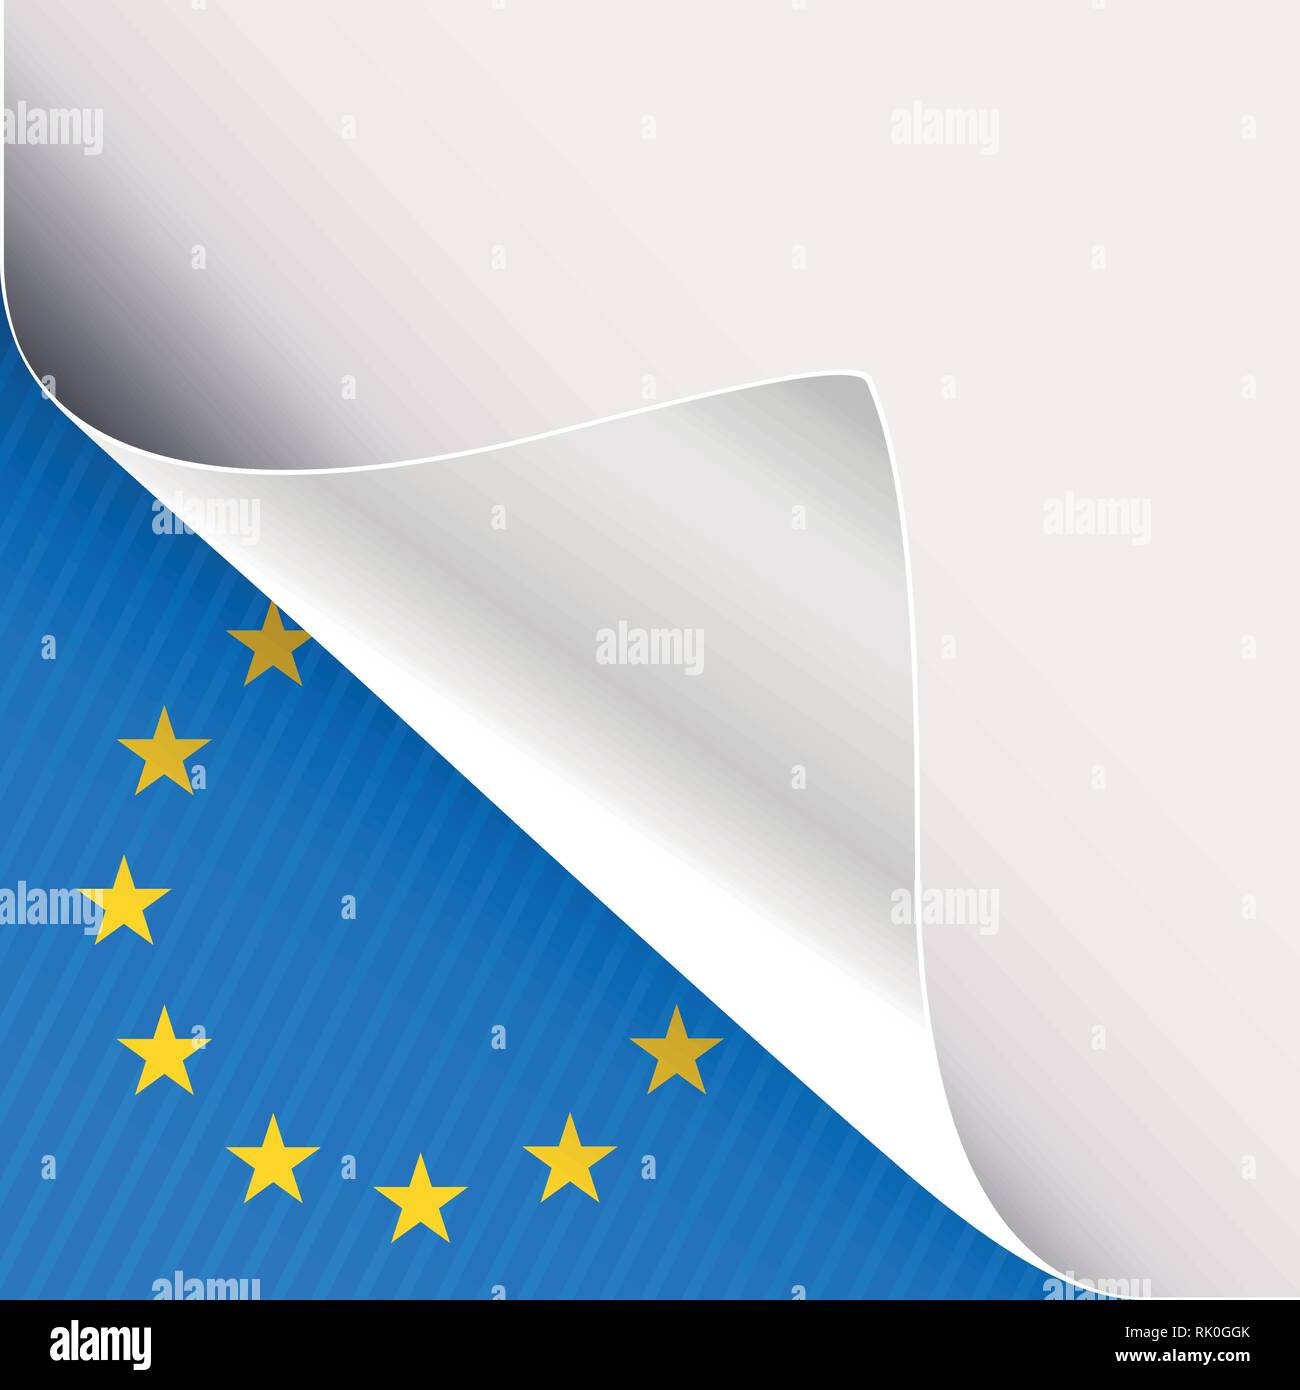 Gondolé coin de livre blanc sur un fond bleu à l'angle inférieur gauche avec signe de l'Union européenne. Vector illustration. Illustration de Vecteur